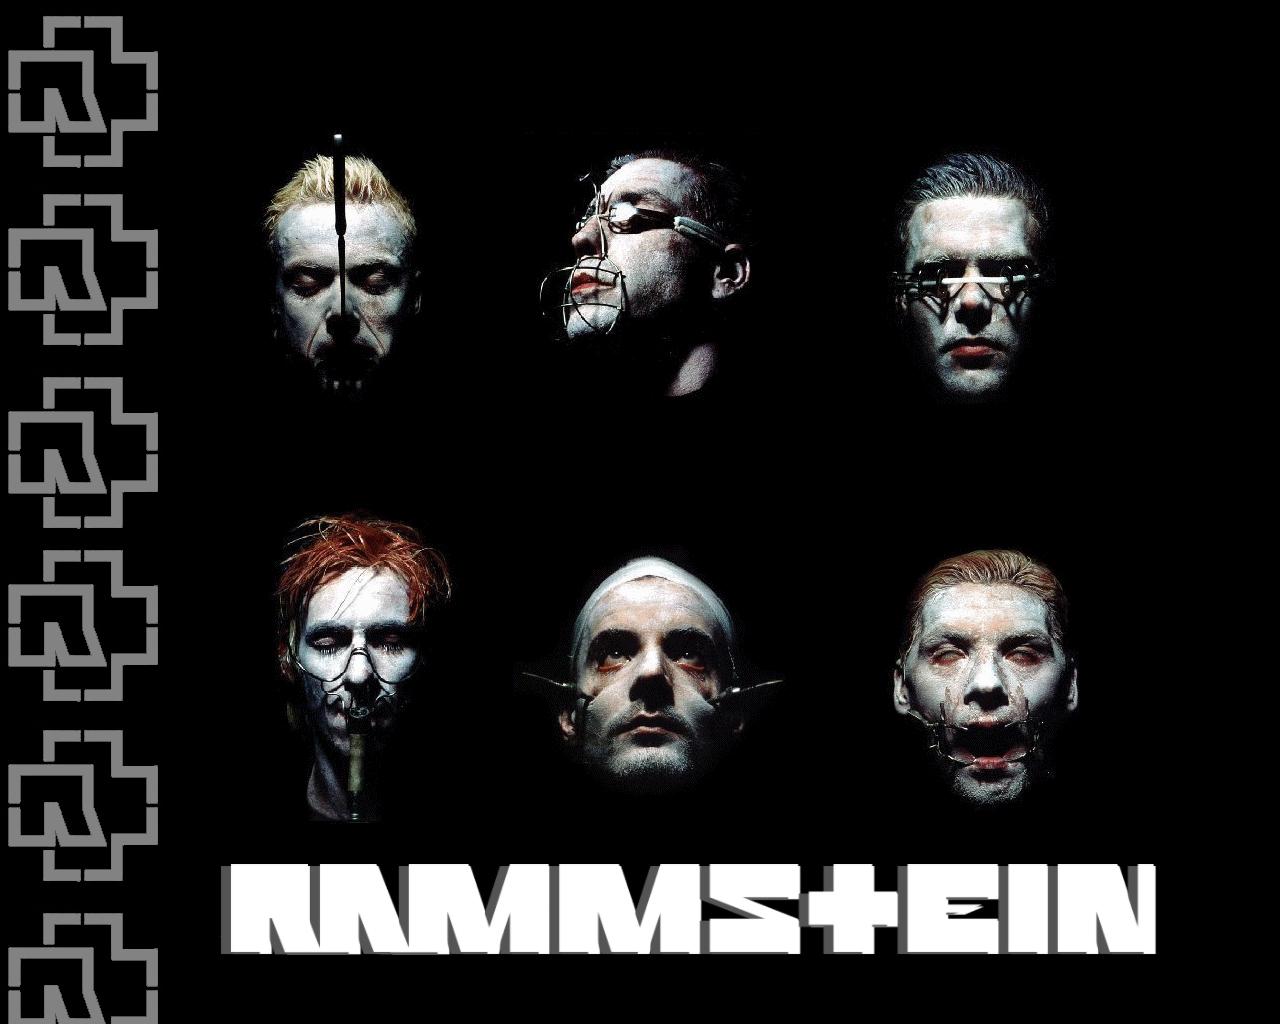 Альбом песен рамштайн. Rammstein обложка. Обложки к группе Rammstein. Rammstein 1994 обложки. Rammstein Rammstein обложка альбома.